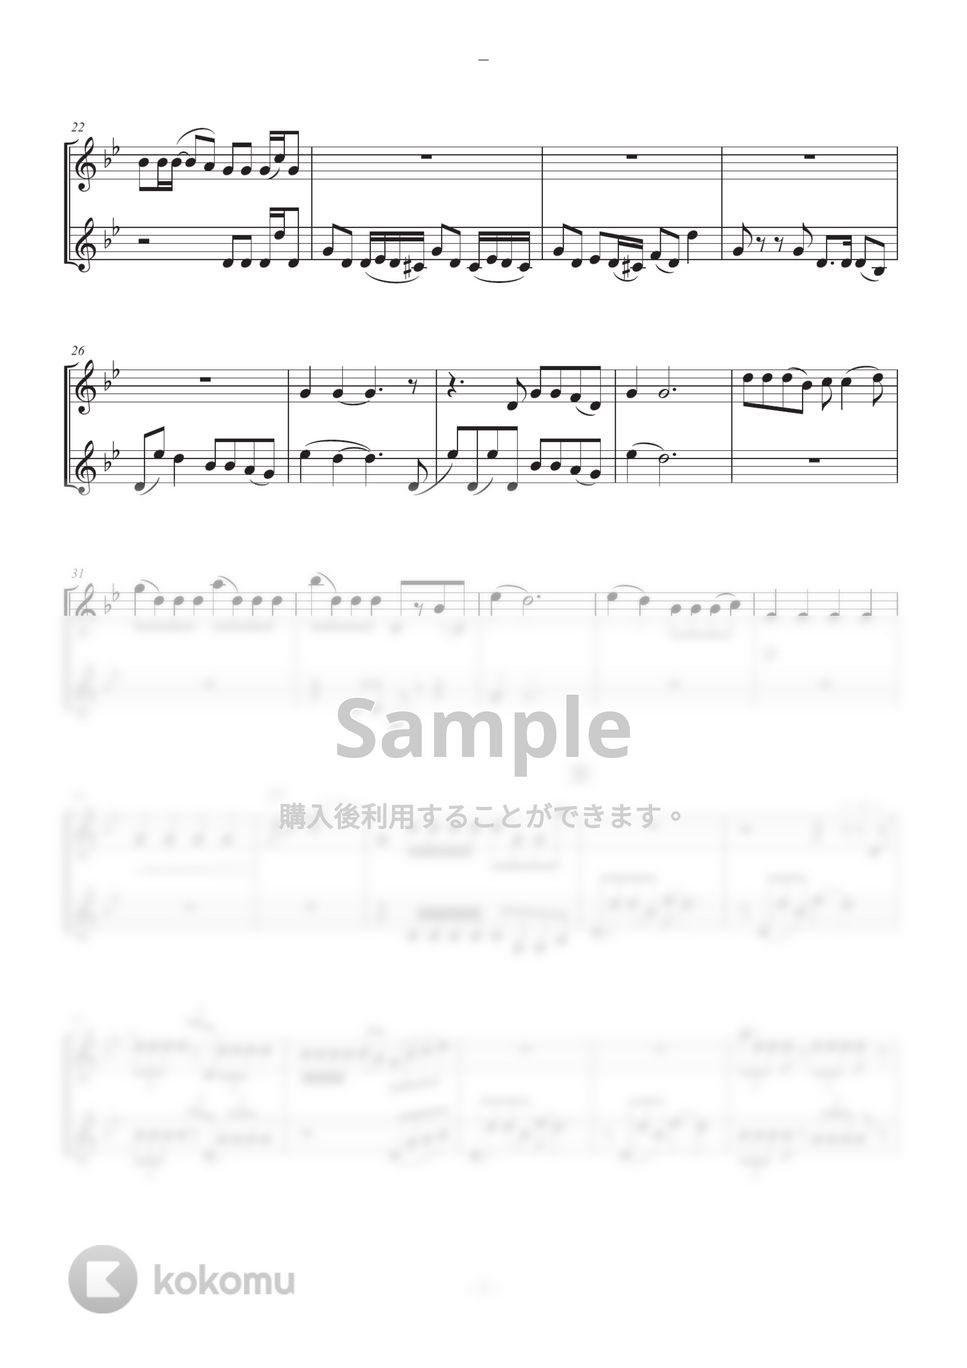 DECO*27 / GIGA. / Ado - 踊 (クラリネット２重奏) by SHUN&NANA Daily Clarinets!